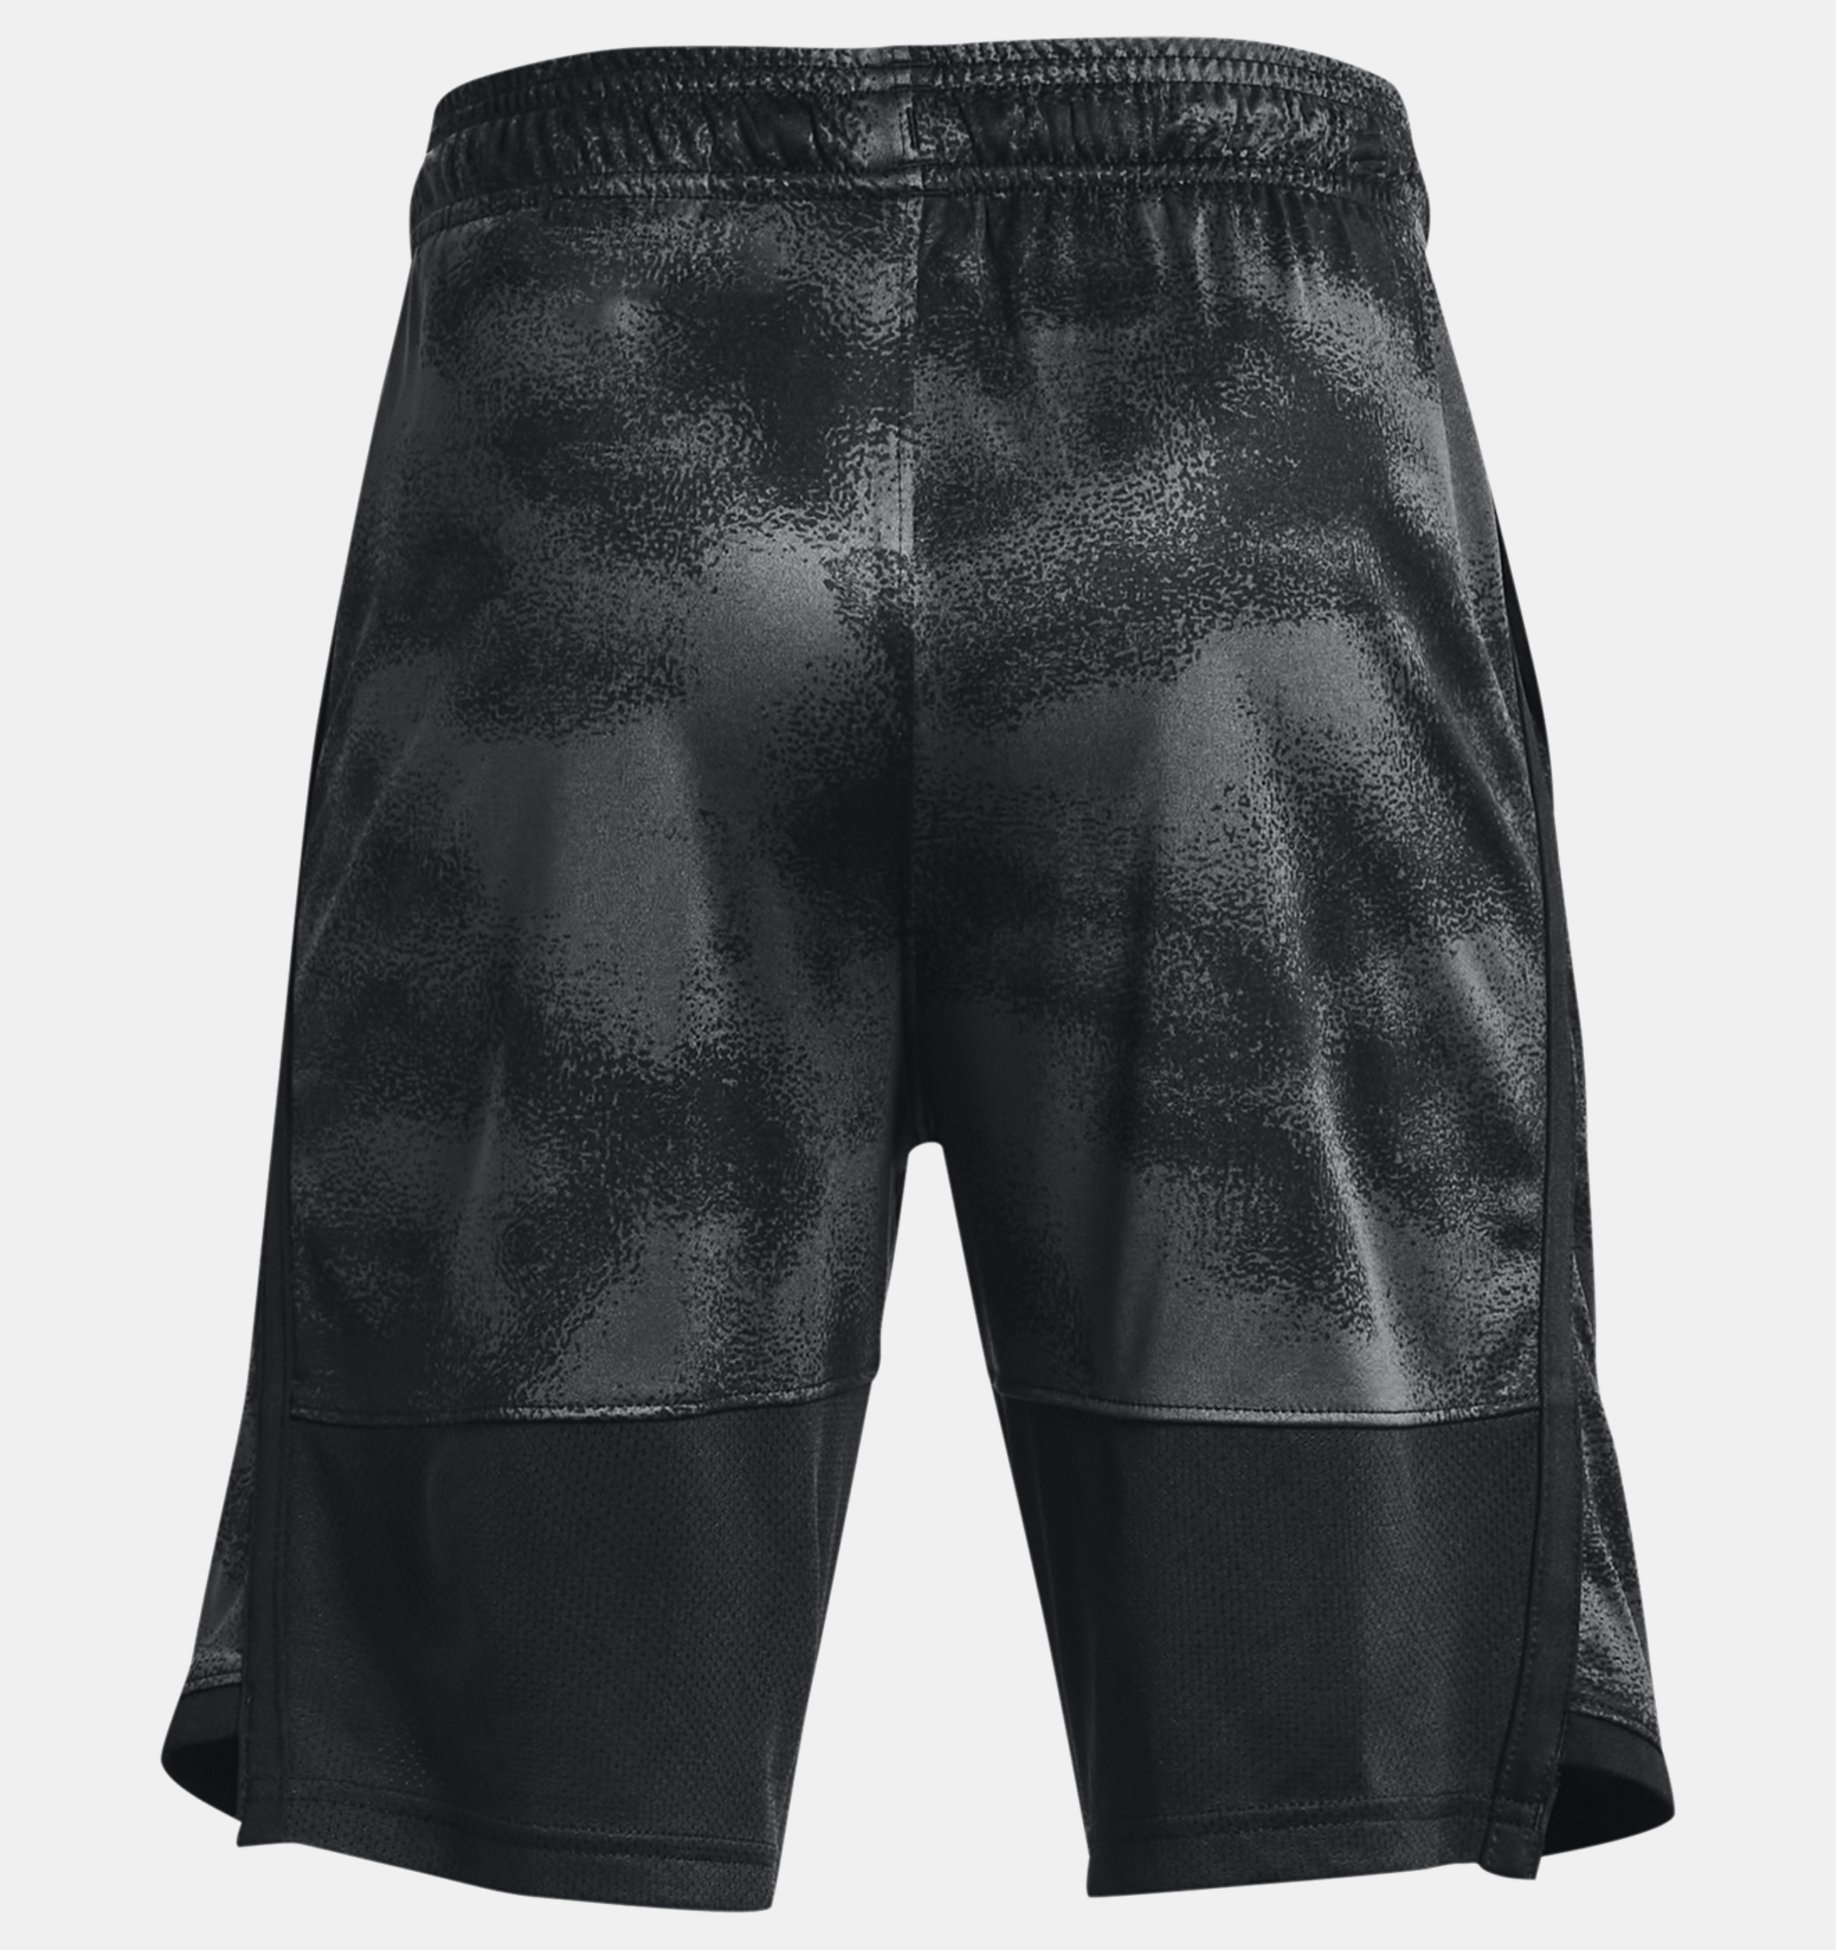 Boys' UA Stunt 3.0 Branded Shorts